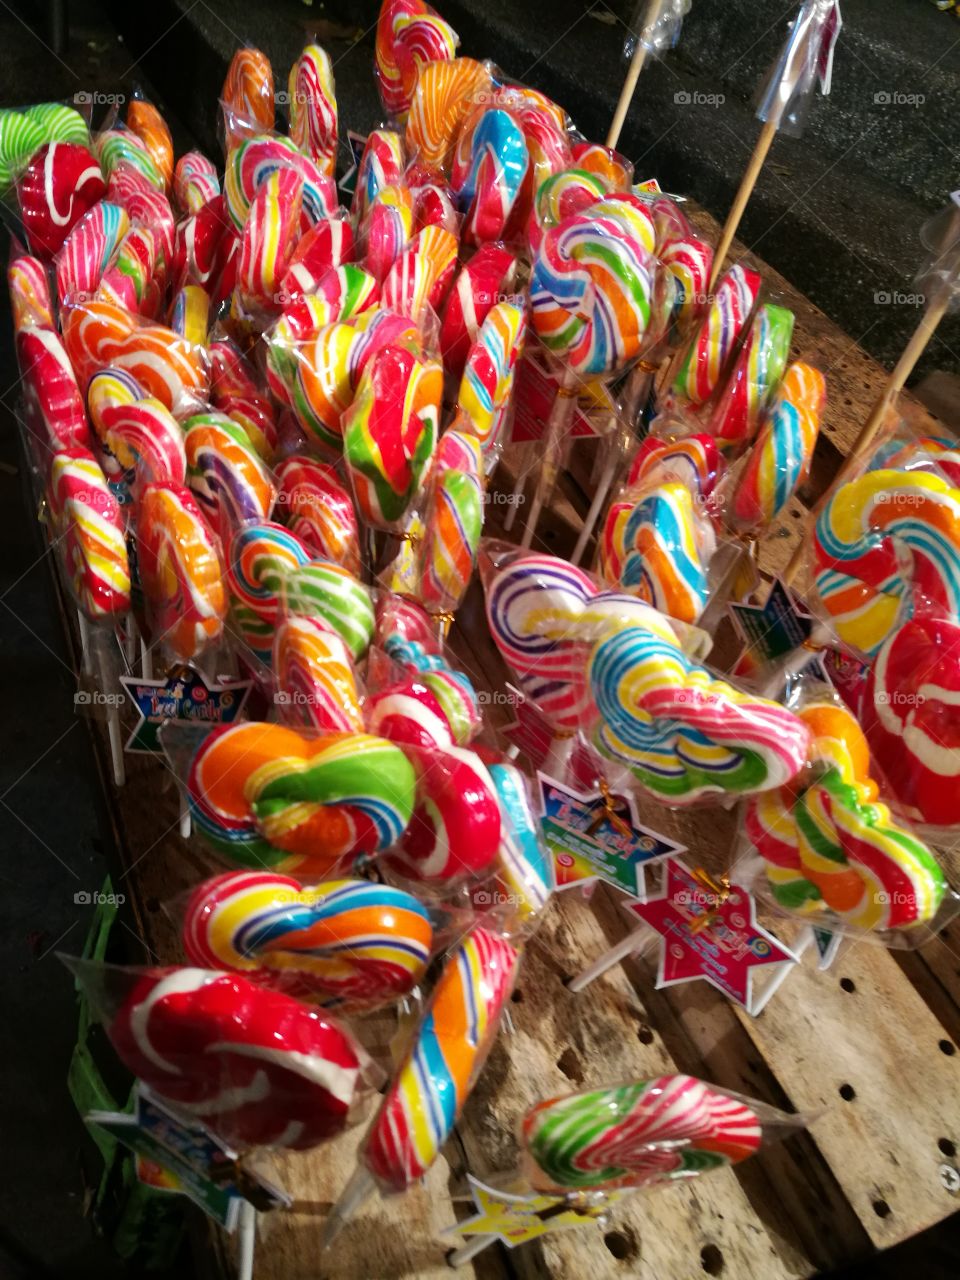 Lollipop 30 baht each (0.9$)